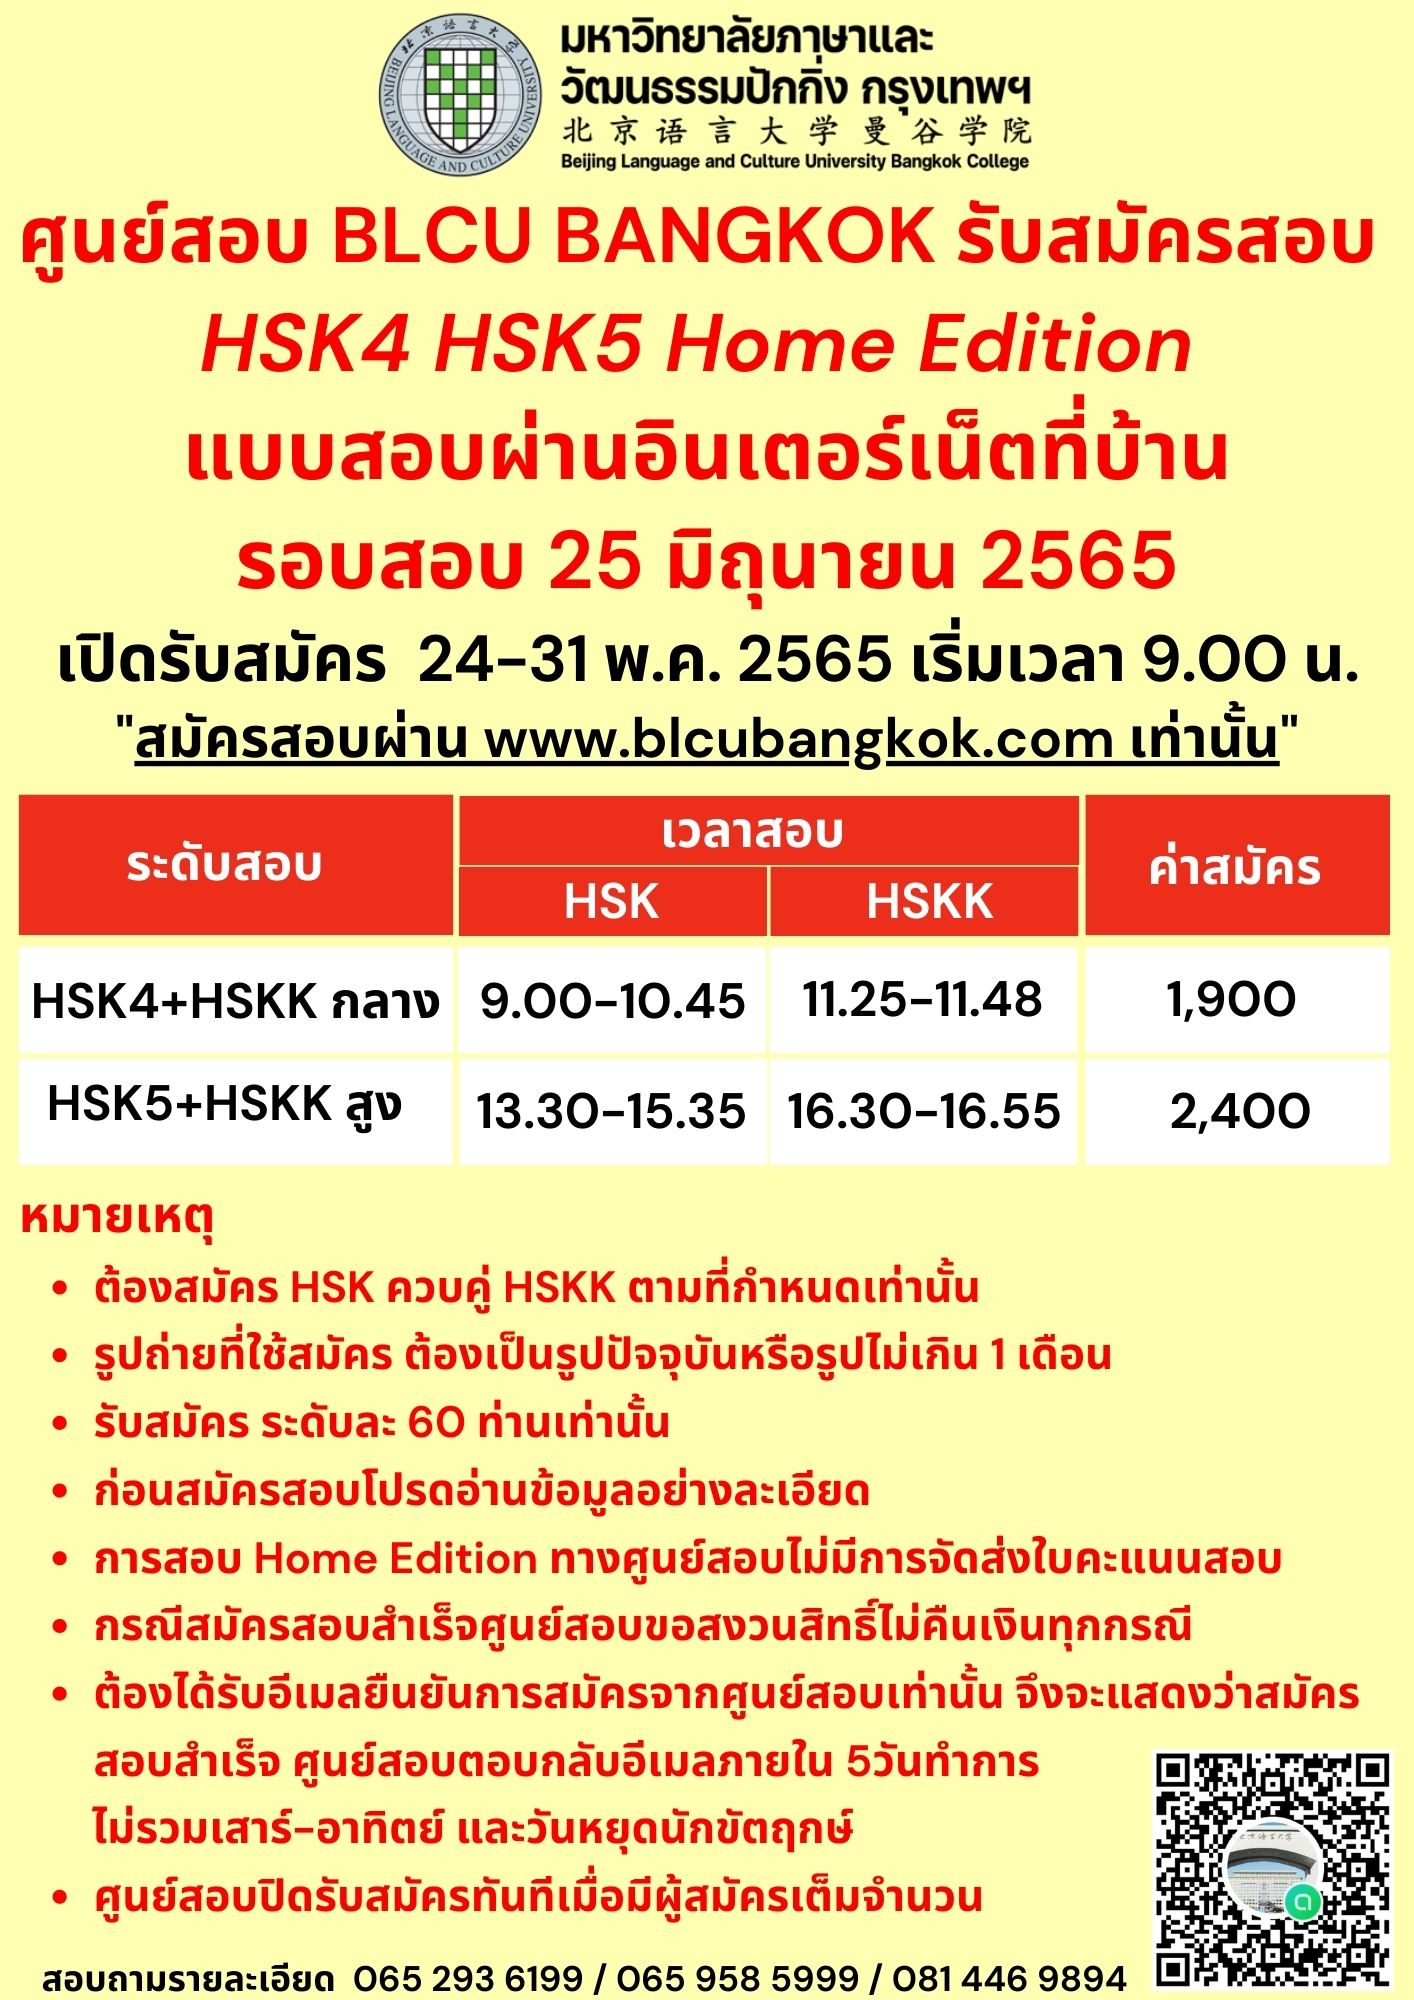 การสอบ HSK Online ที่บ้าน (Home Edition)